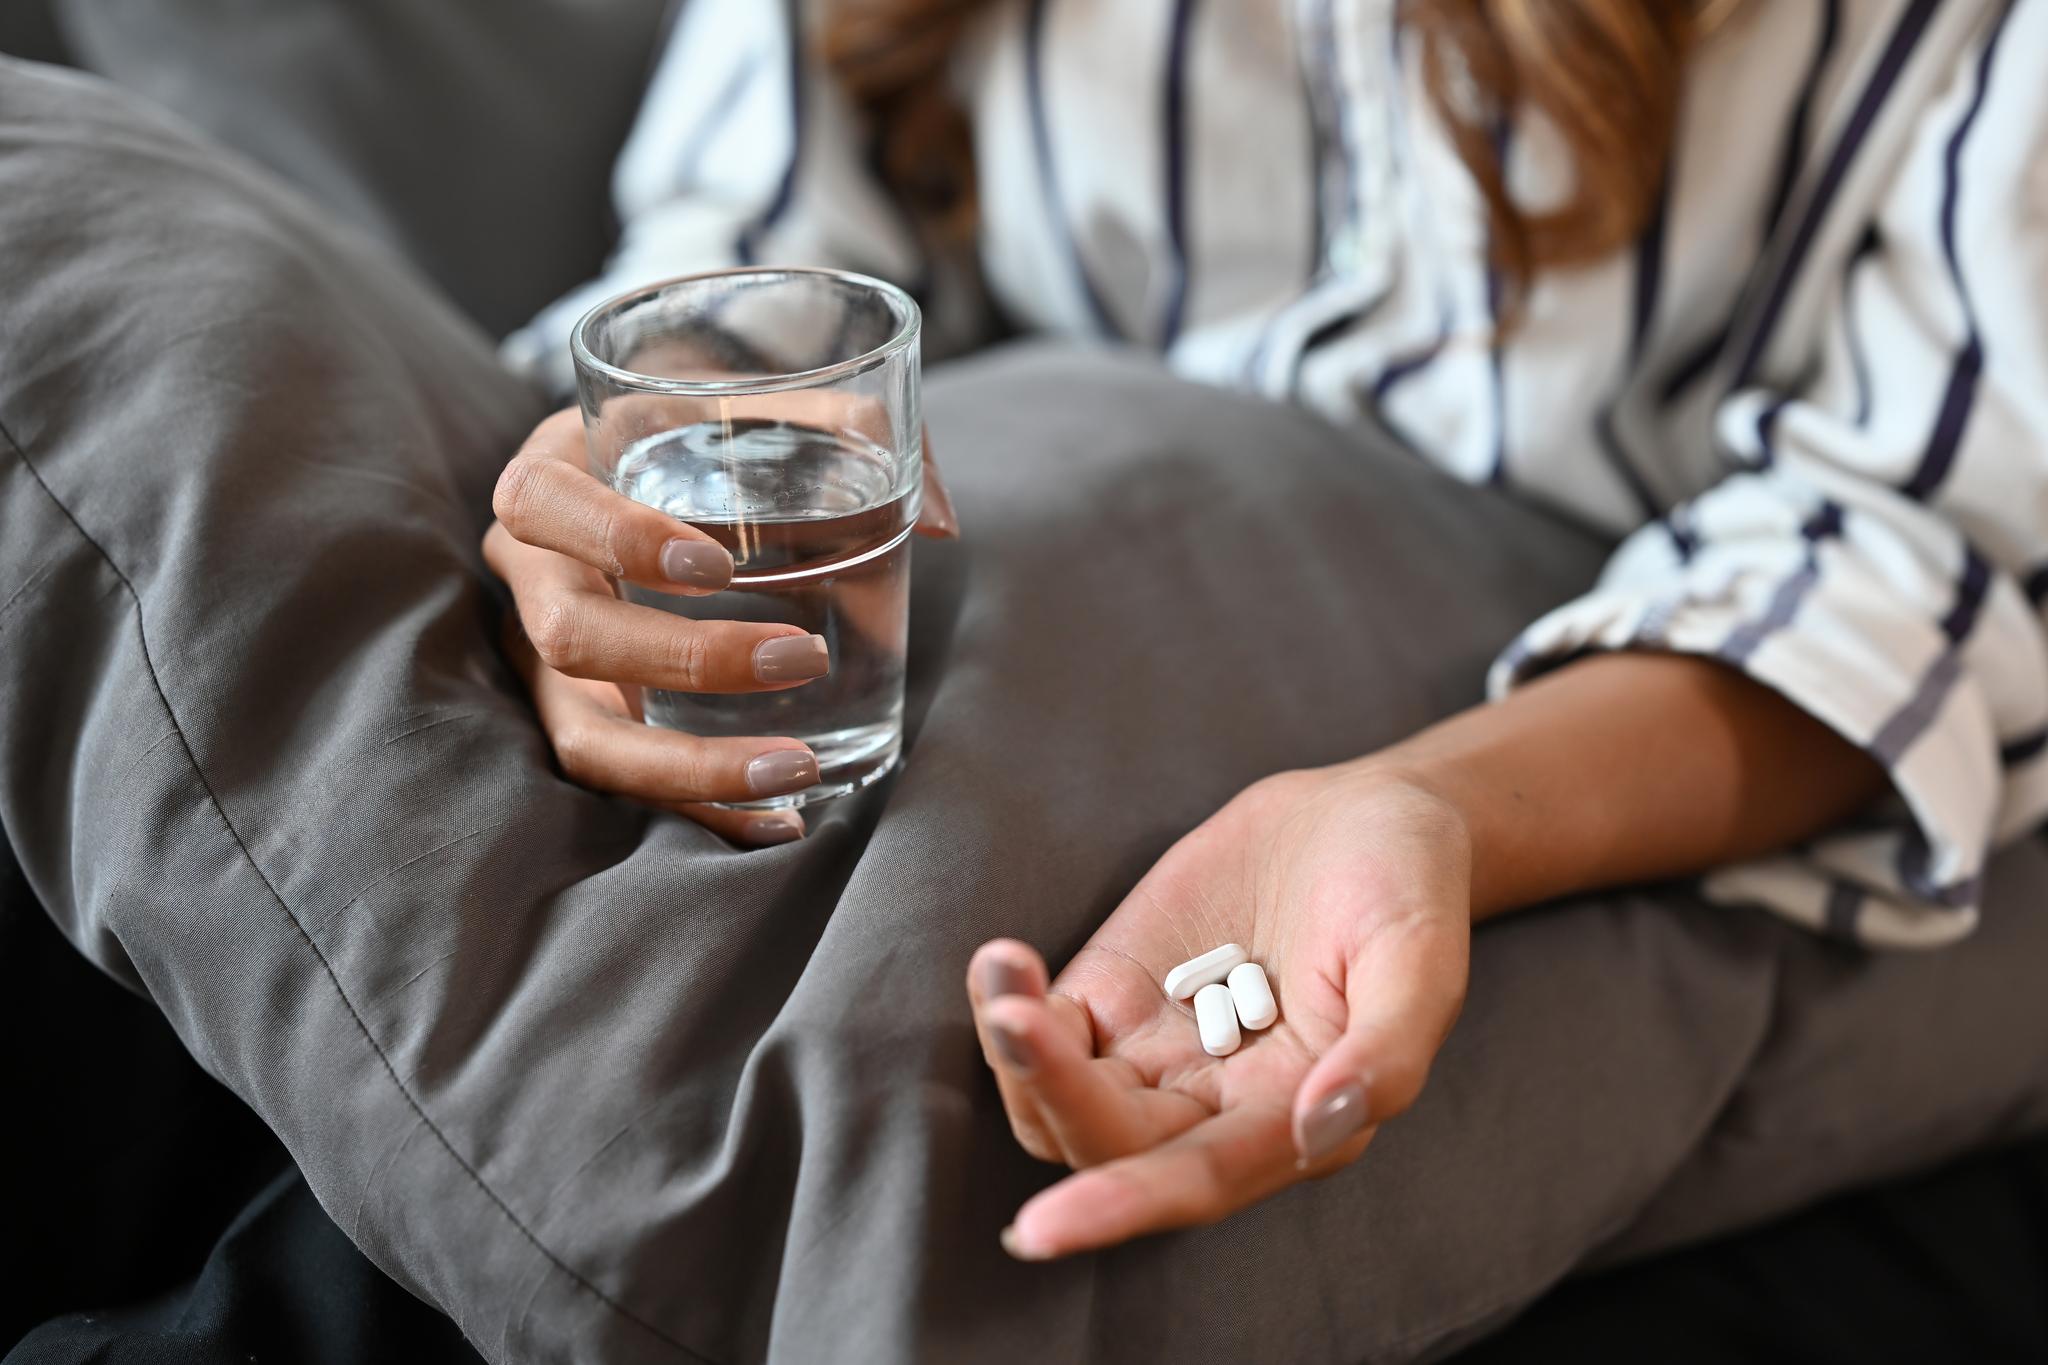 Det er svak dokumentasjon for å anbefale mer enn to års behandling med antipsykotika. Likevel anbefaler mange livsvarig behandling, skriver Marianne Mjaaland.